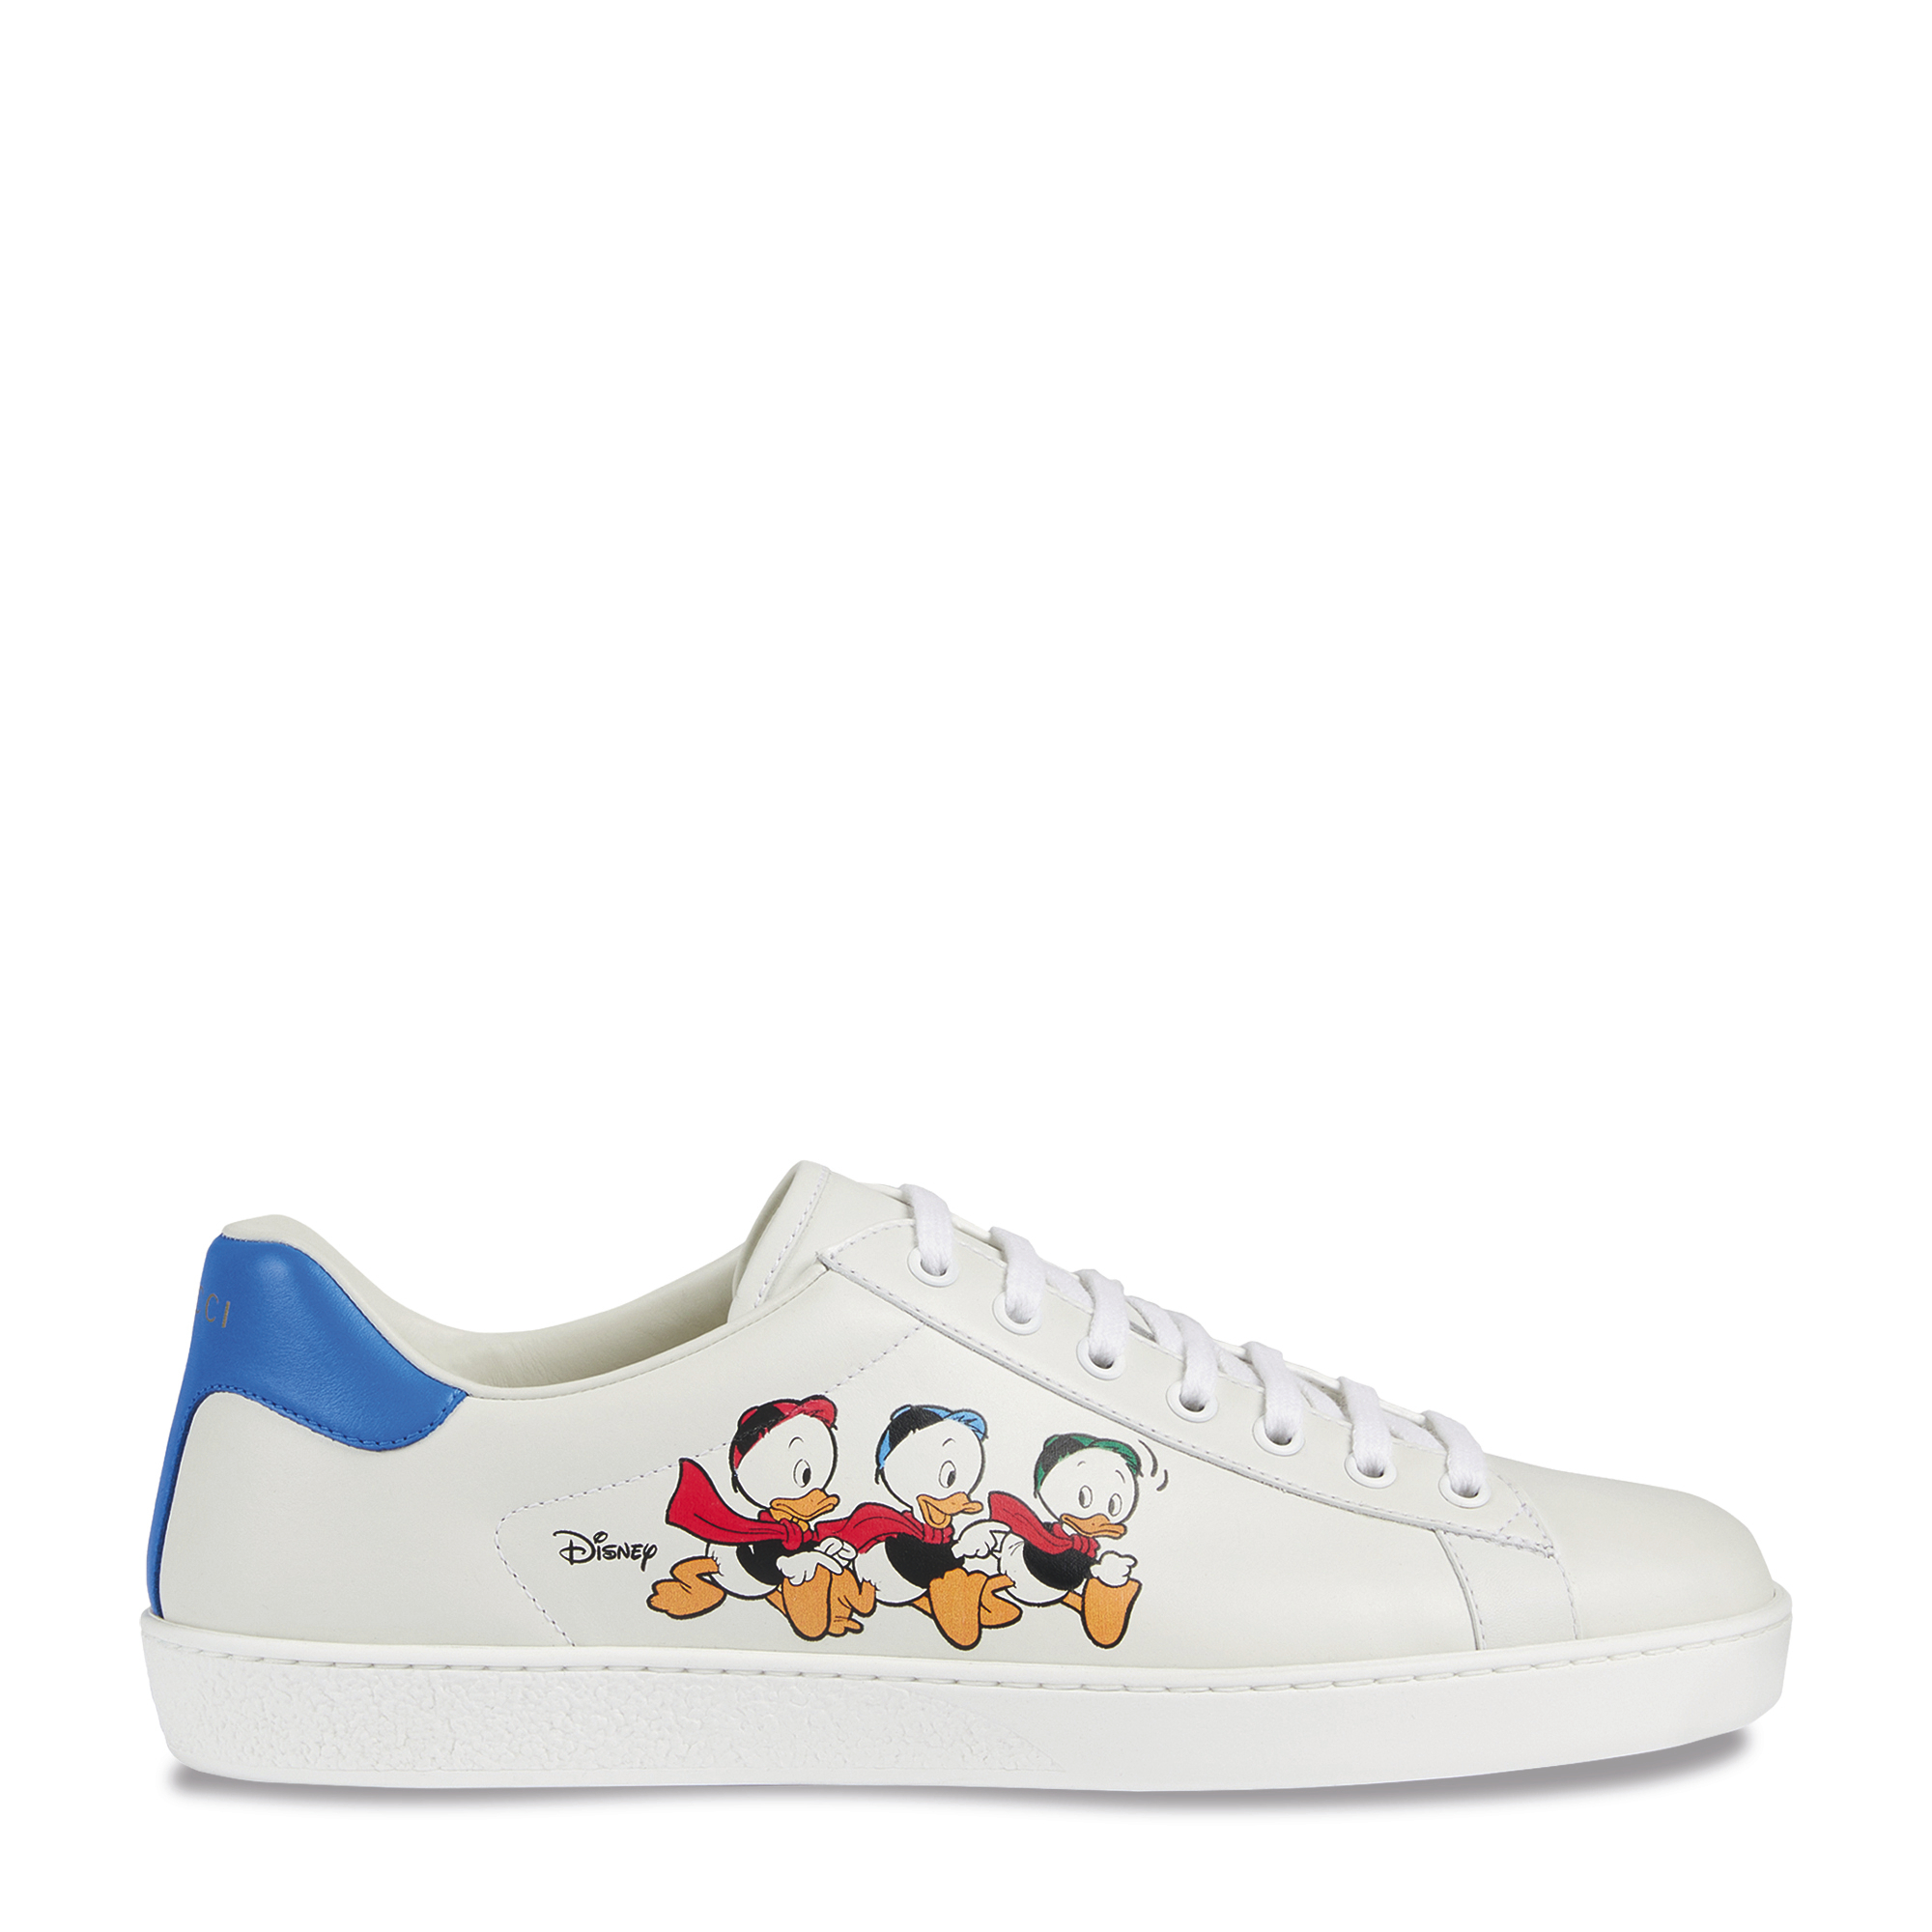 Gucci x Disney Donald Duck Flash Cartoon Design Gucci Shoes / Sneakers Mens